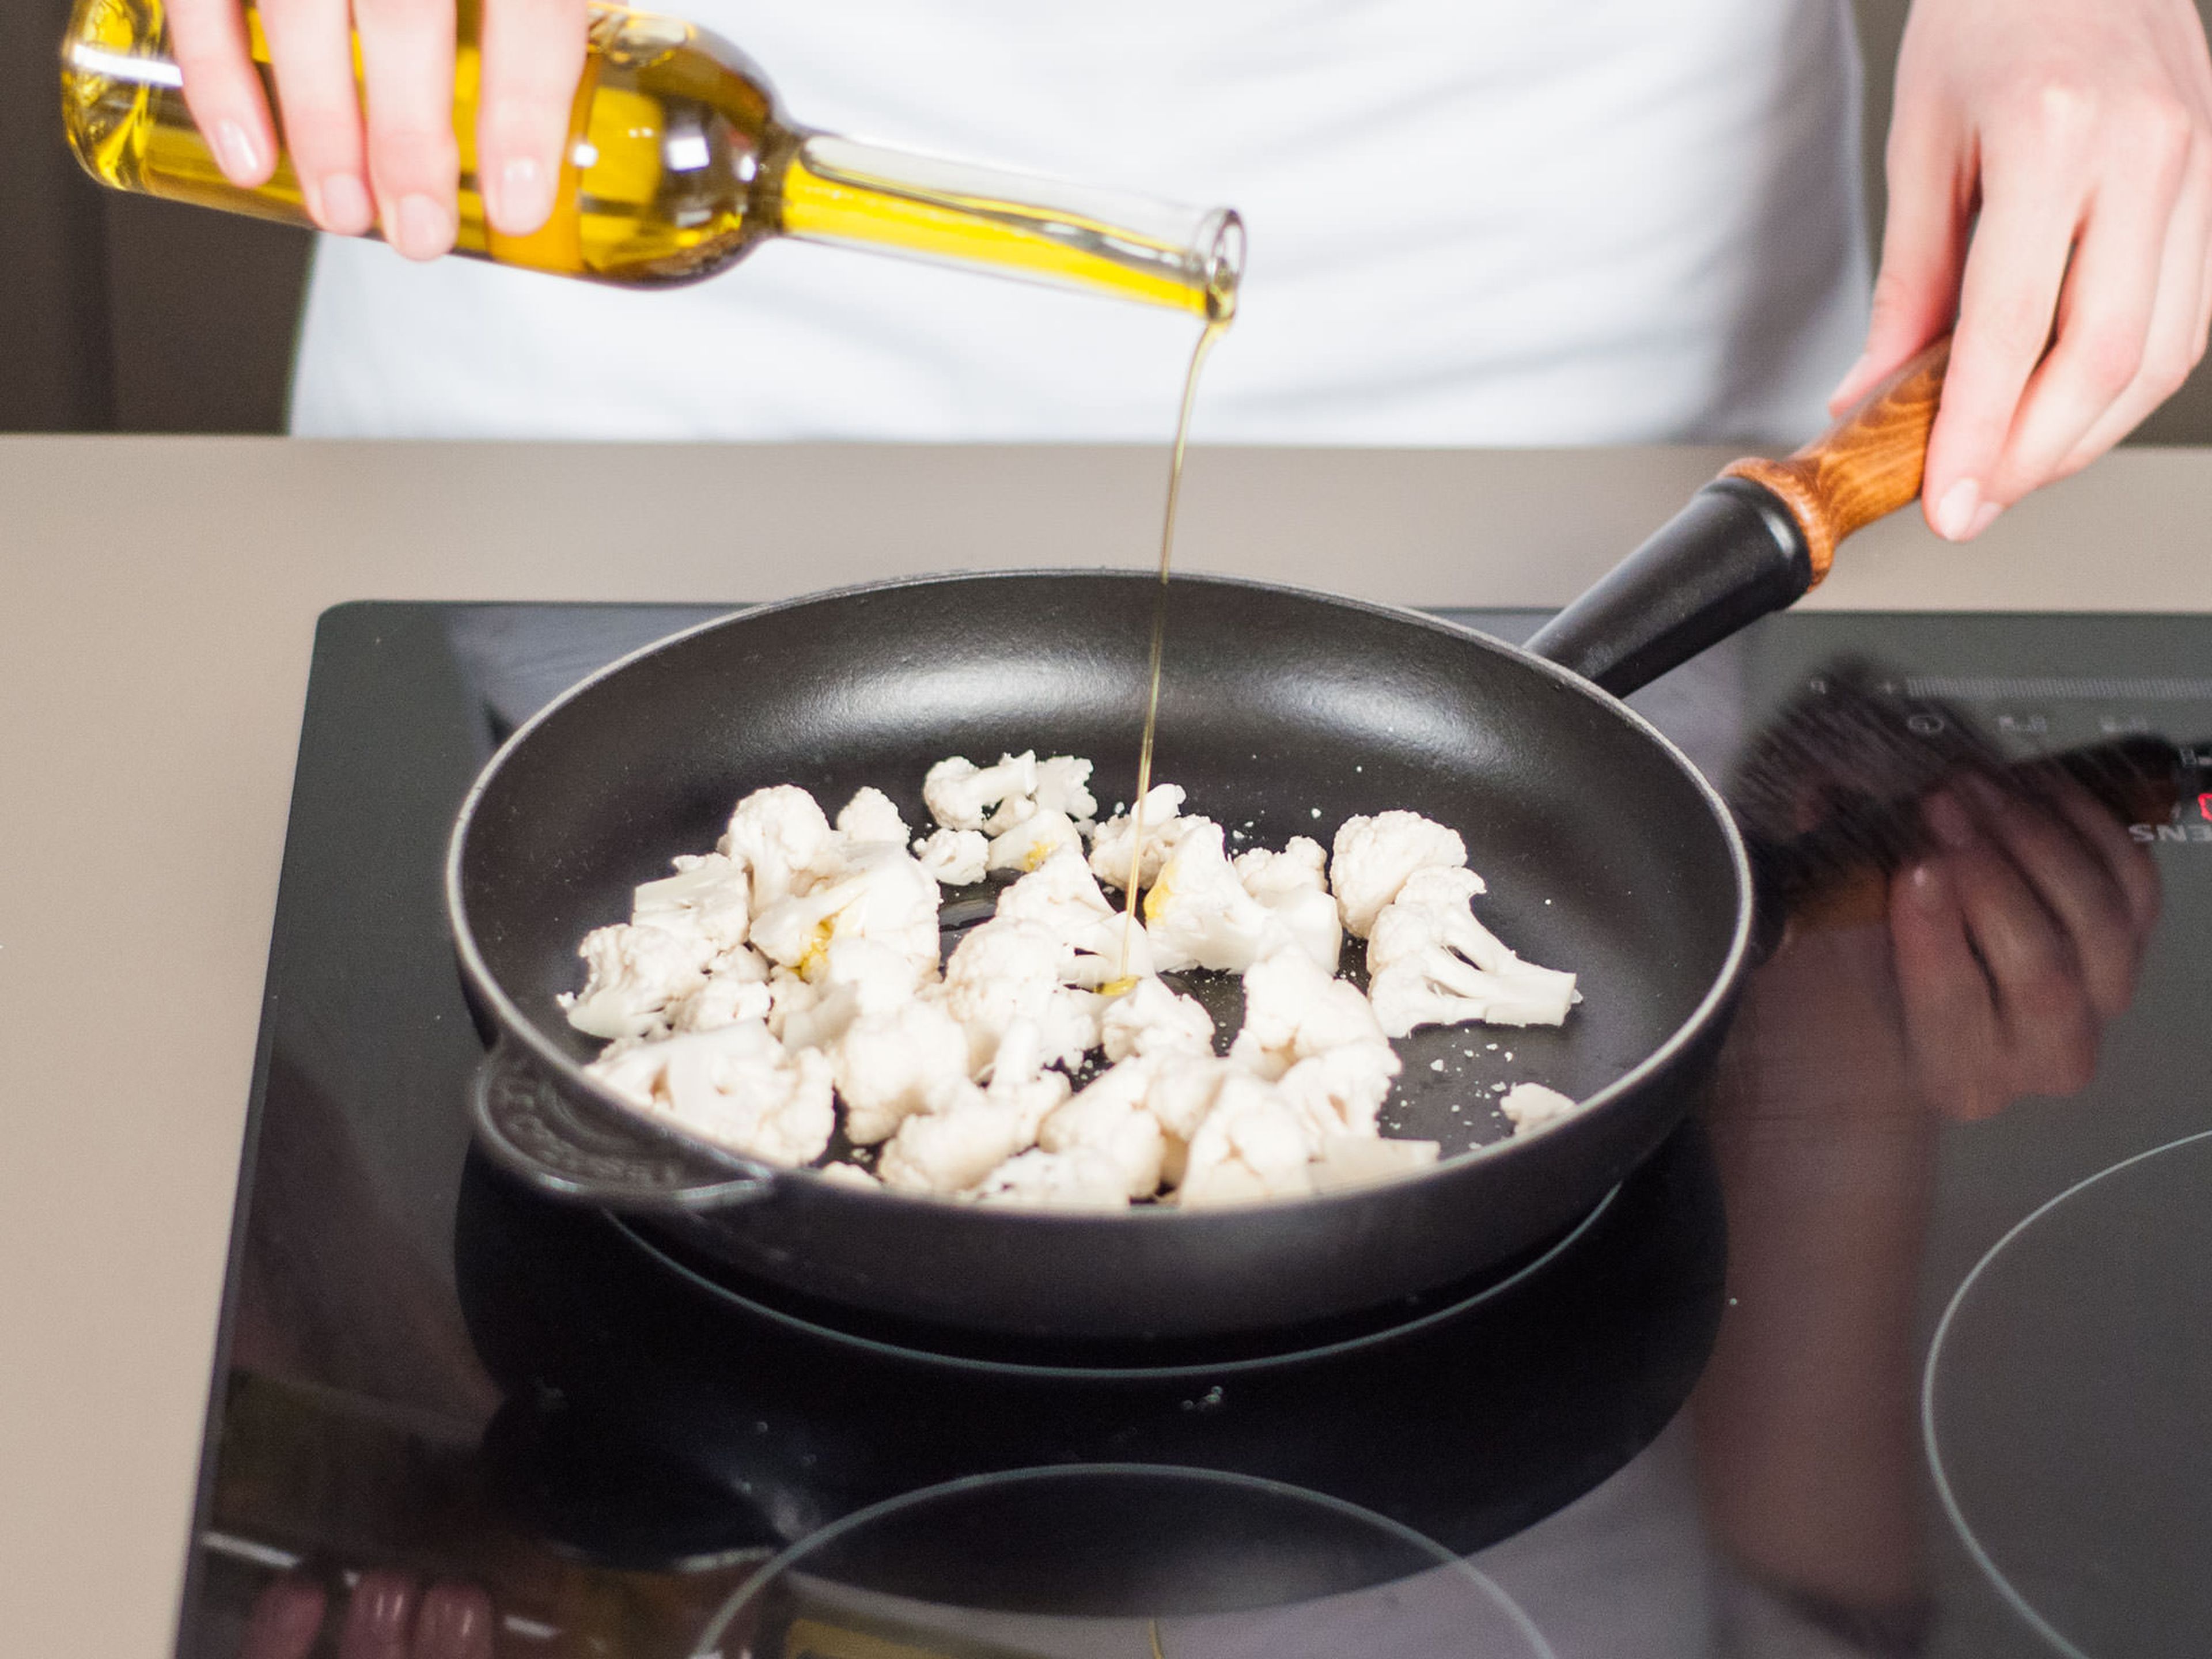 Blumenkohl in eine ofenfeste Pfanne geben. Olivenöl hinzugeben und mit Salz und Pfeffer würzen. Im Backofen bei 180°C ca. 10 Min. backen. Dann aus dem Backofen nehmen und beiseitestellen.